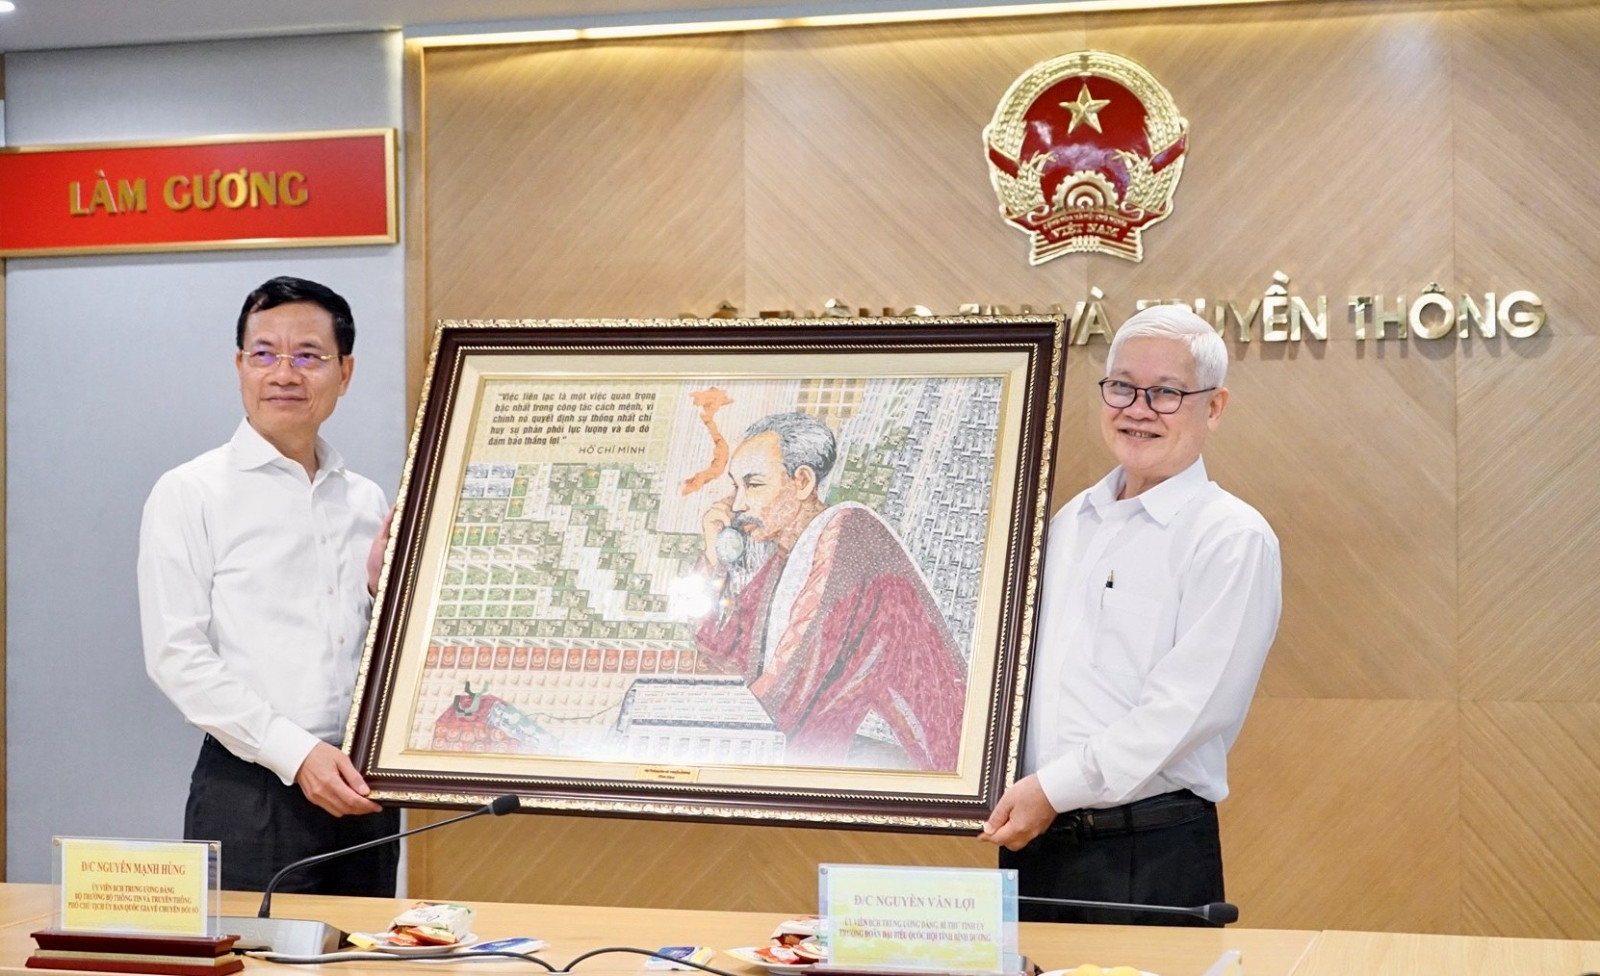 Bộ trưởng Nguyễn Mạnh Hùng tặng bức tranh Chủ tịch Hồ Chí Minh cho đồng chí Nguyễn Văn Lợi.